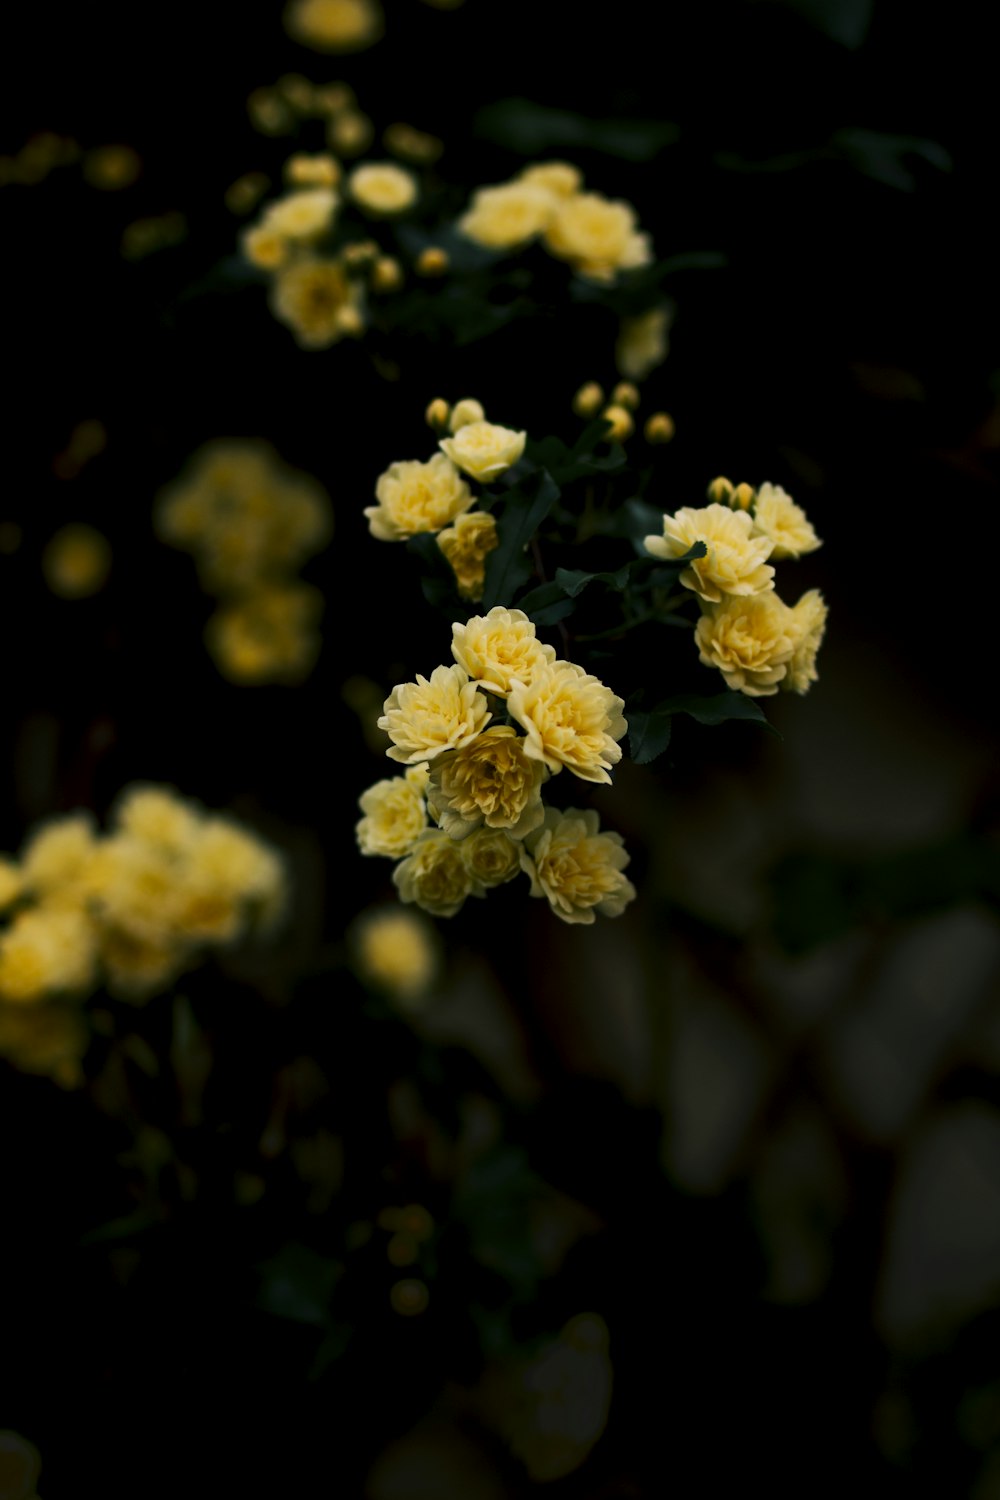 노란 꽃의 선택적 초점 사진